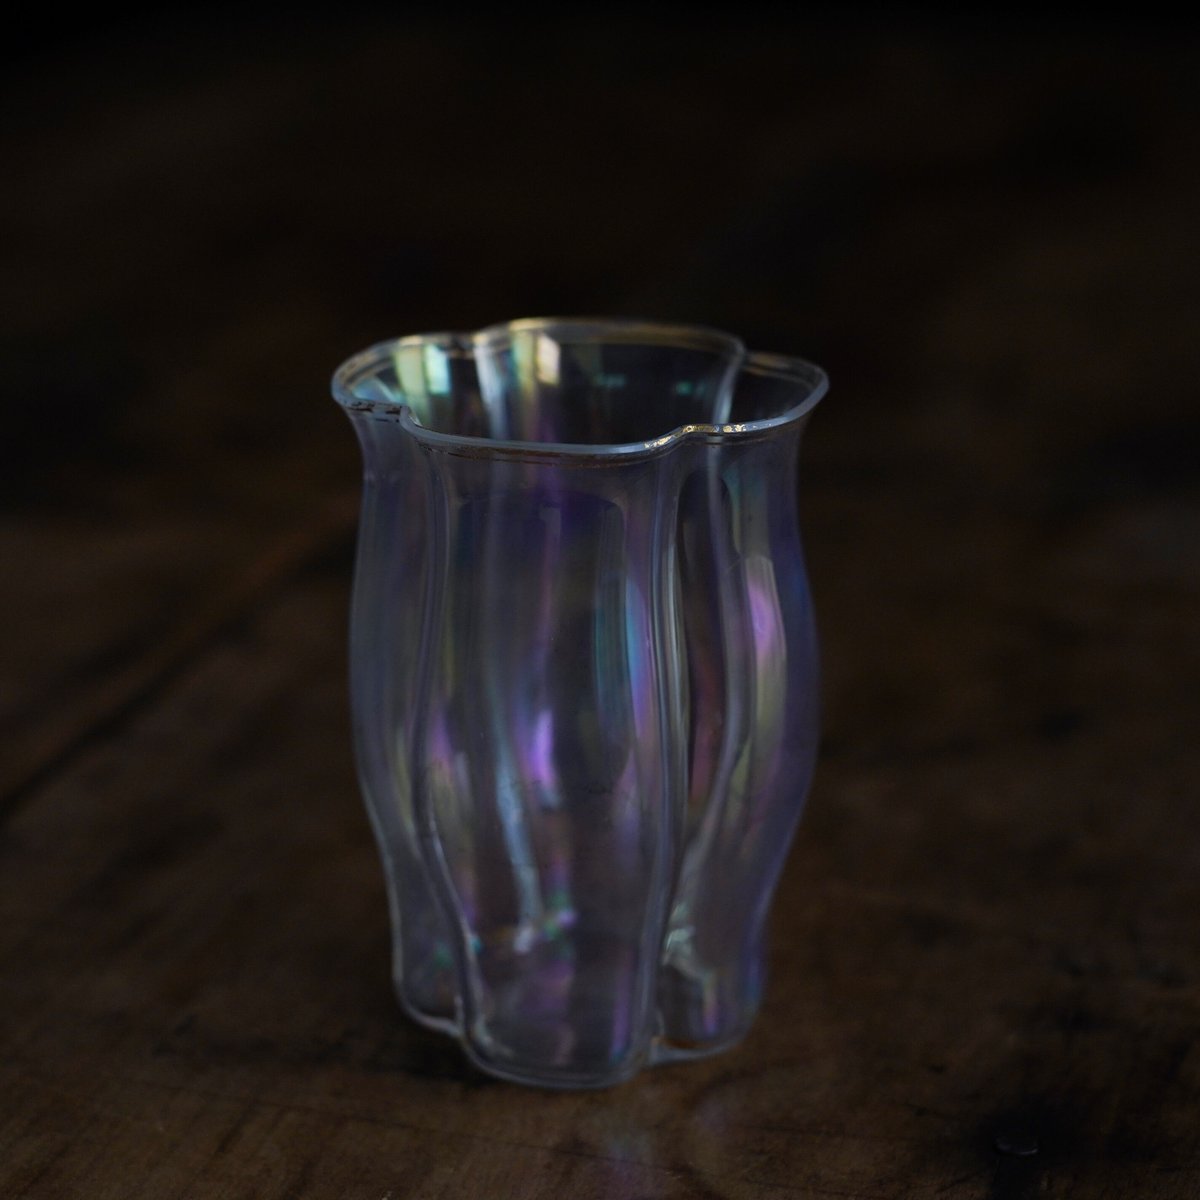 19世紀 オーストリア ロブマイヤー 四つ葉型 金彩グラス / Lobmeyr Quatrefoil Glass / Austria 19th C.